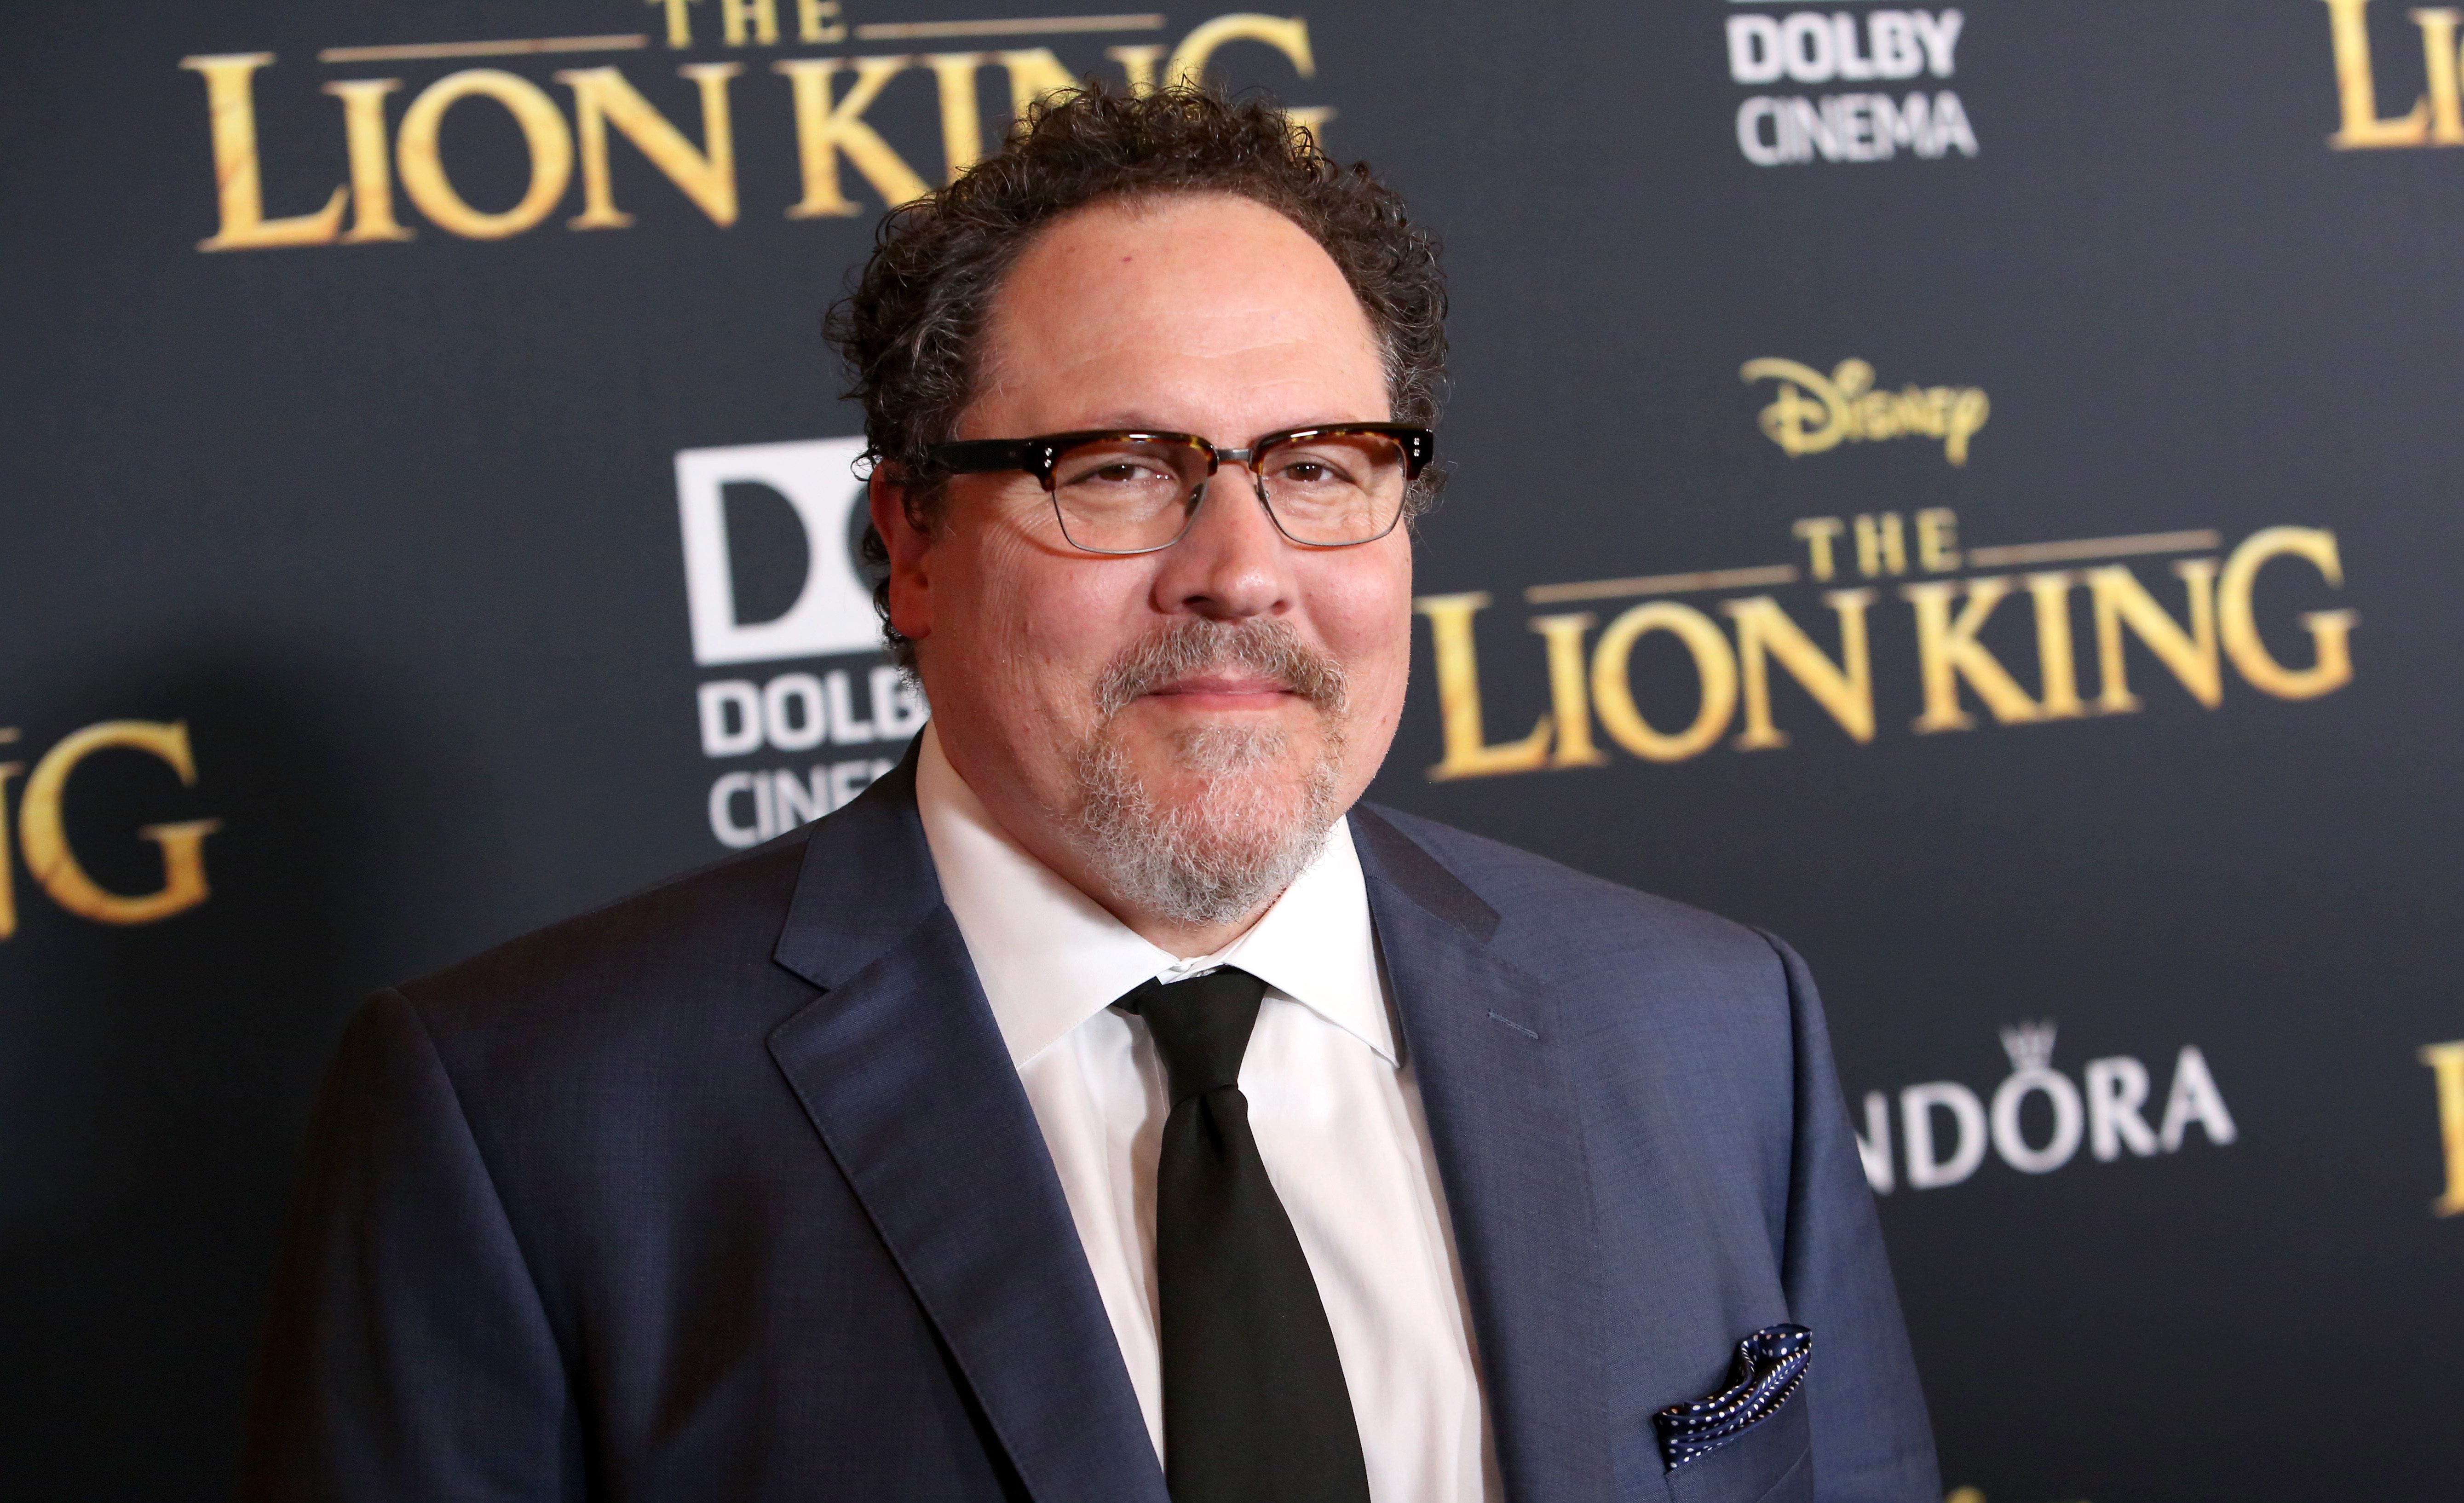 Jon Favreau en la premiere de The Lion King en Hollywood. / Foto: Getty Images